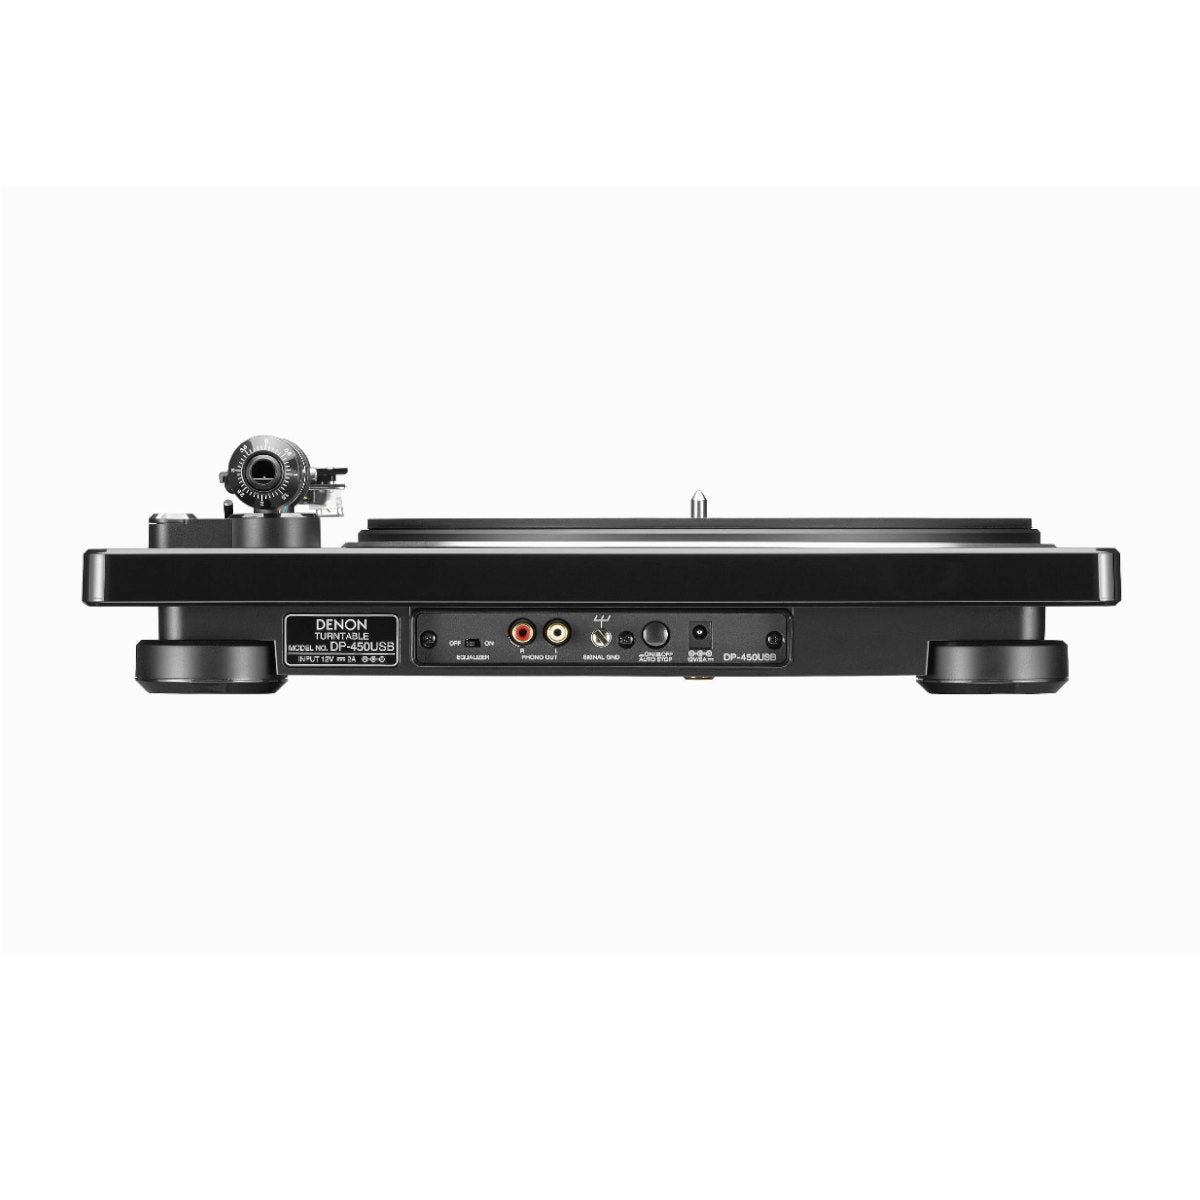 Denon DP-450USB Hi-Fi Turntable 